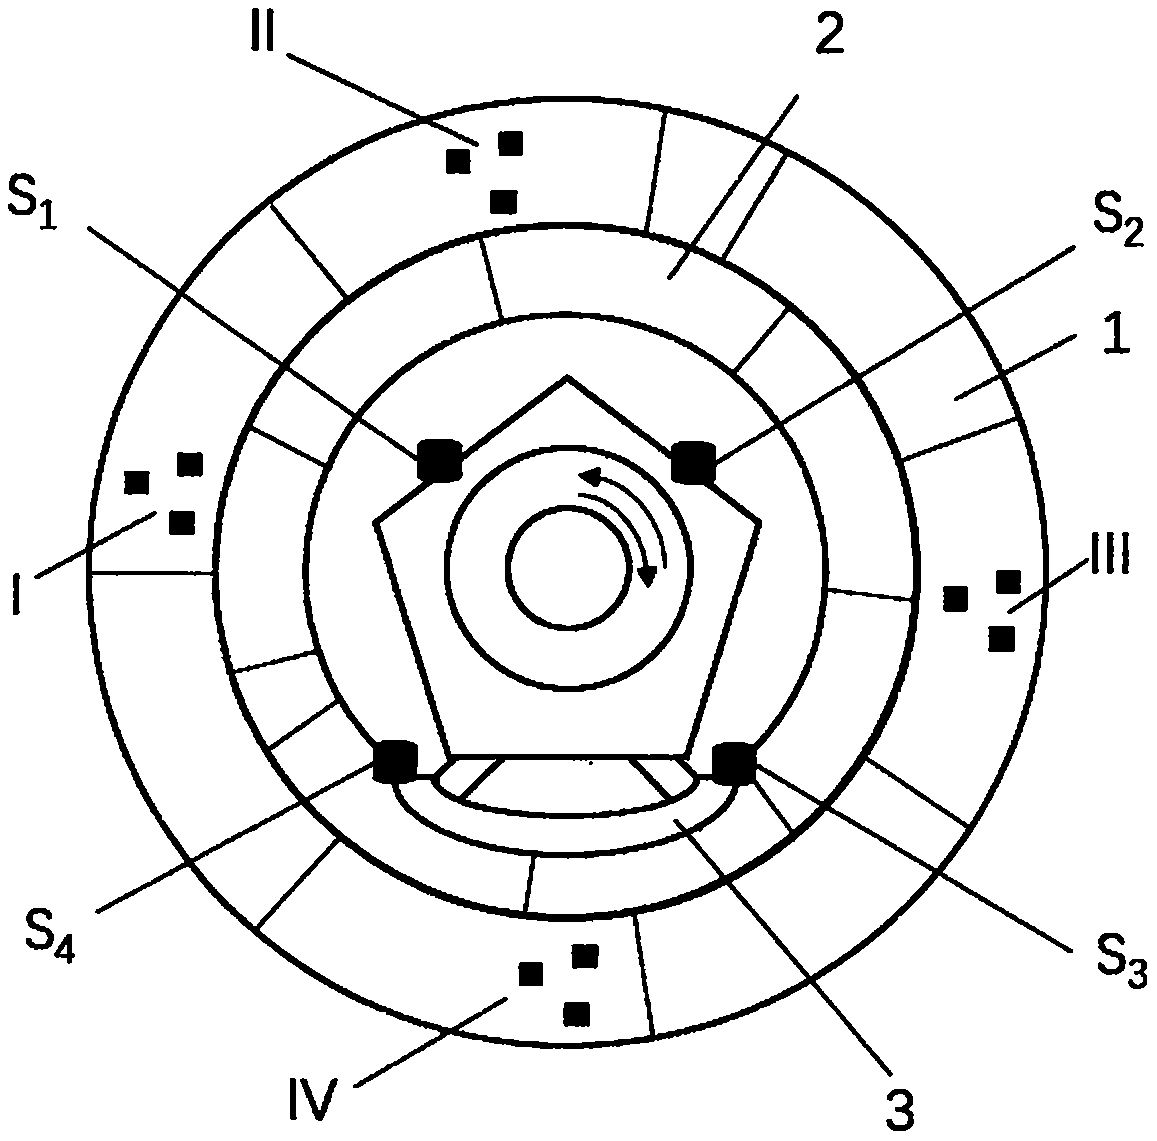 Random detection method of assembling quality of assembling segment rings of shield tunnel